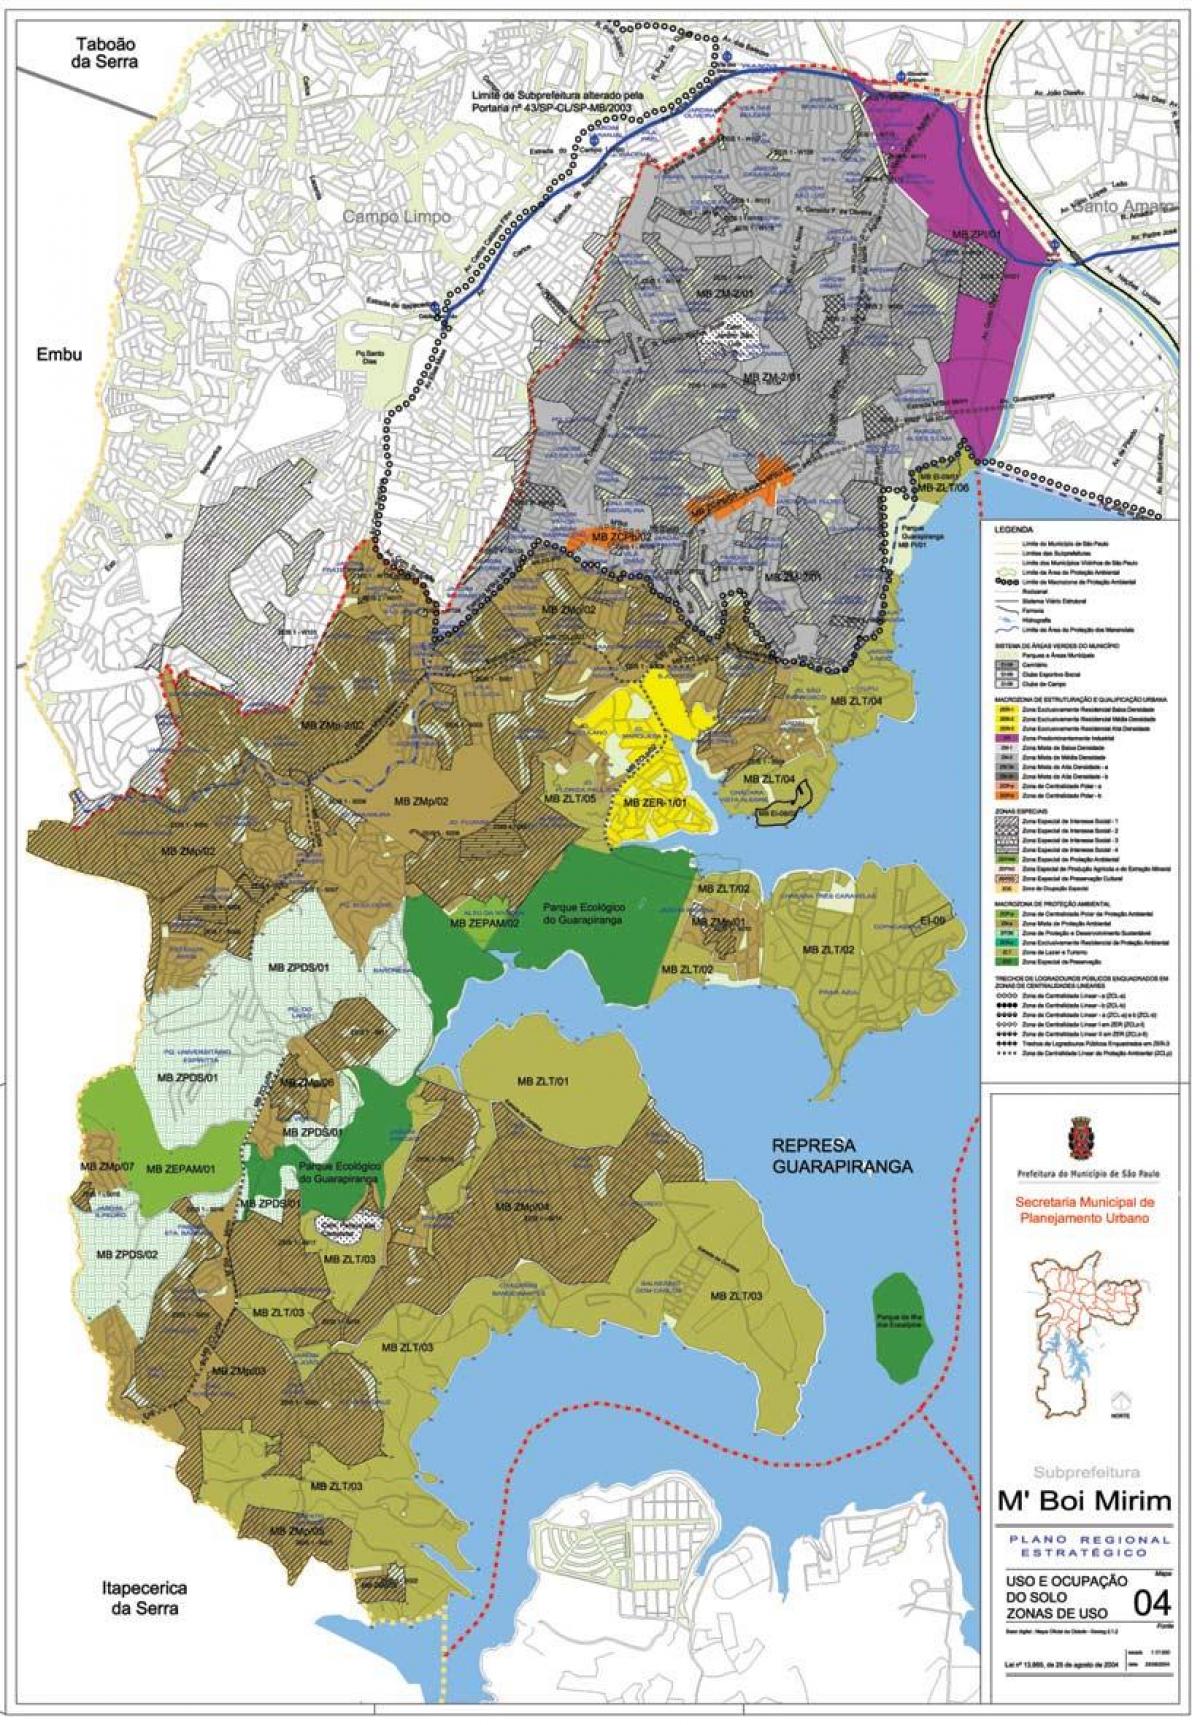 Mapa de M'Boi Mirim São Paulo - la Ocupación de la tierra